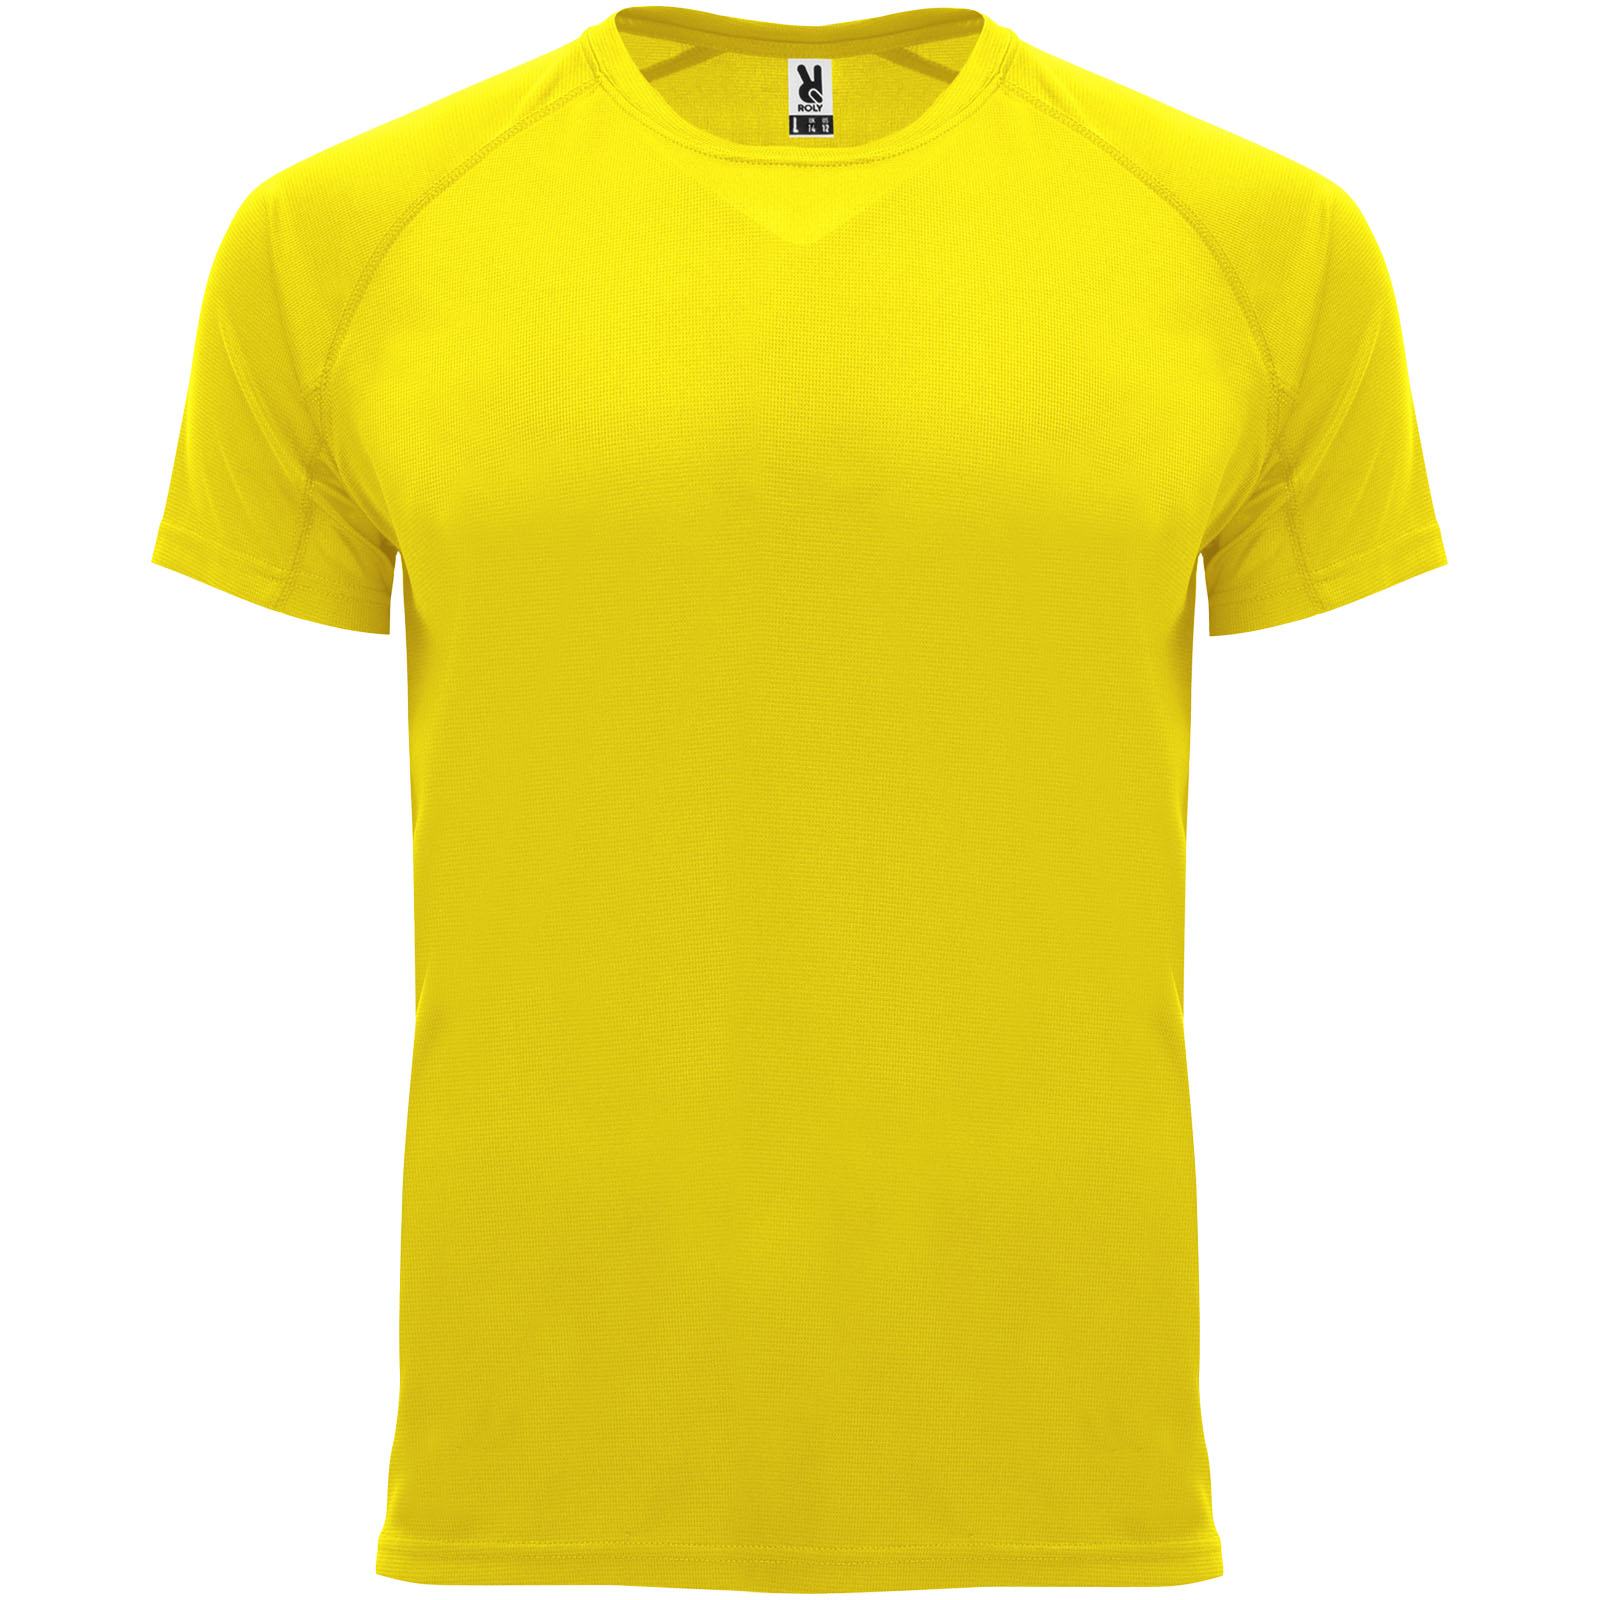 Advertising T-shirts - Bahrain short sleeve kids sports t-shirt